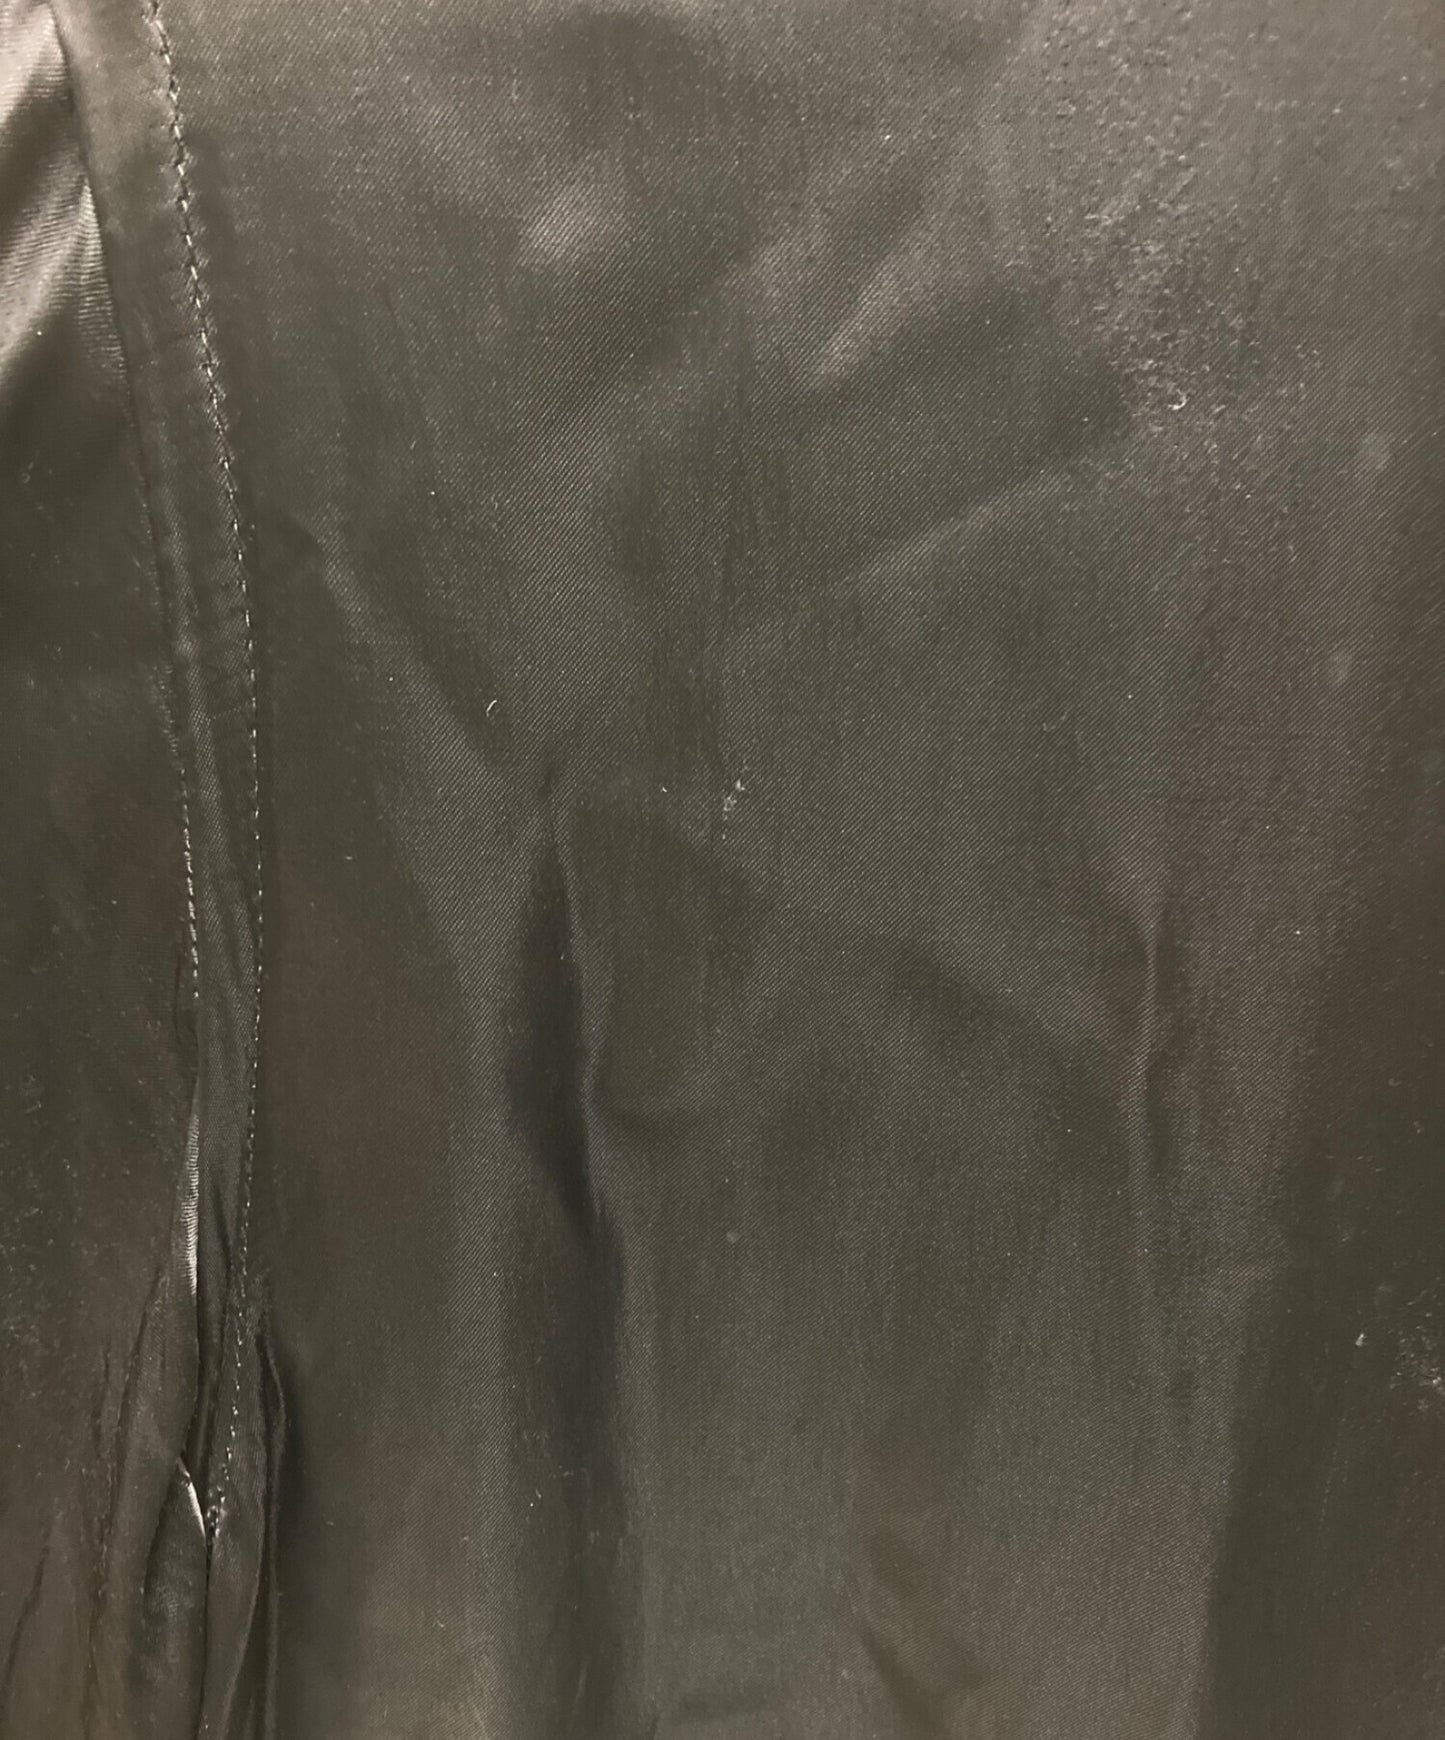 [Pre-owned] BLACK COMME des GARCONS staff coat 1P-C002